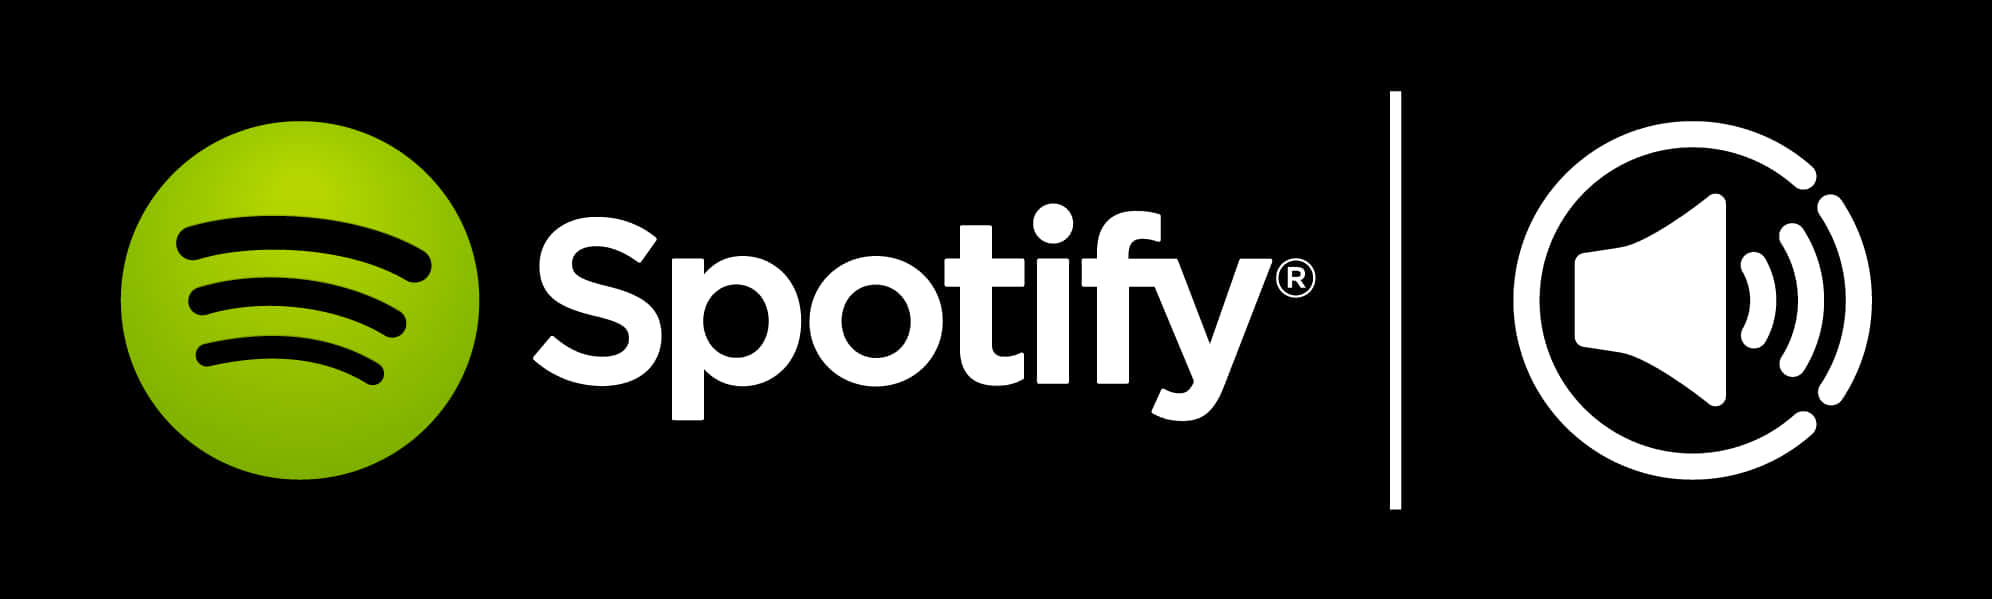 Spotify Logoand Symbols PNG image